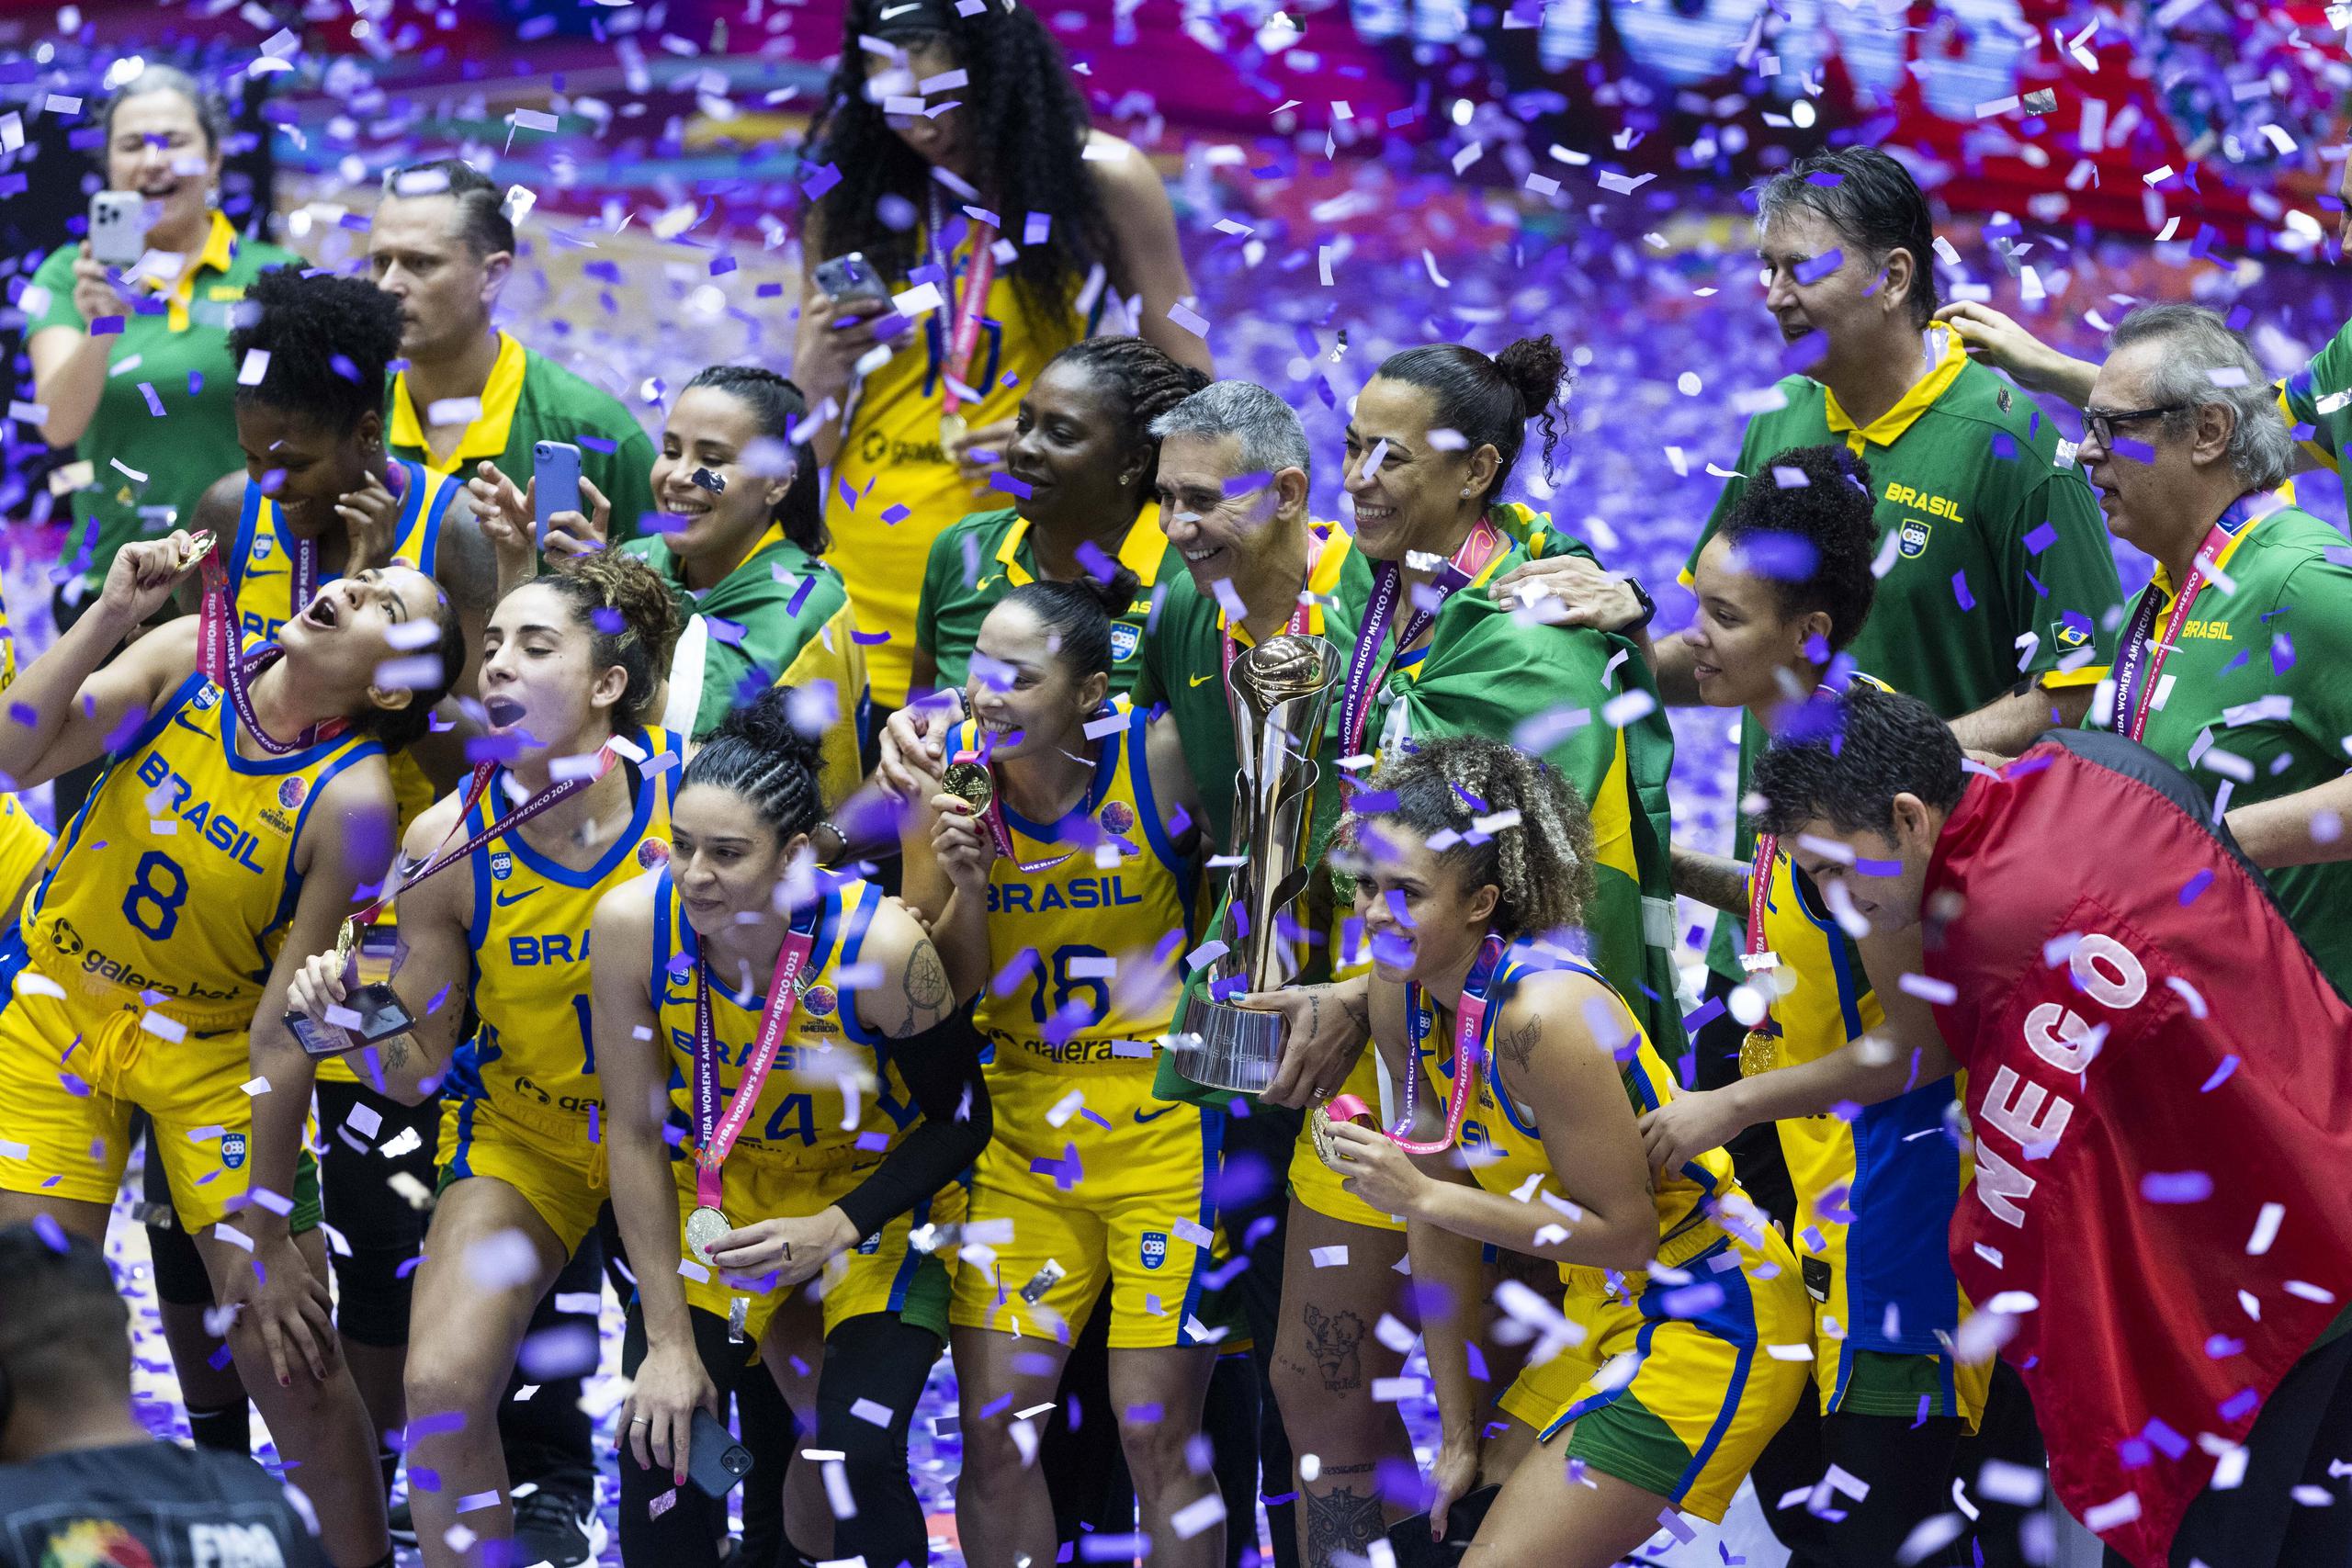 Las brasileñas superaron en la final del Americup a Estados Unidos para proclamarse campeonas del evento por primera vez en 12 años.